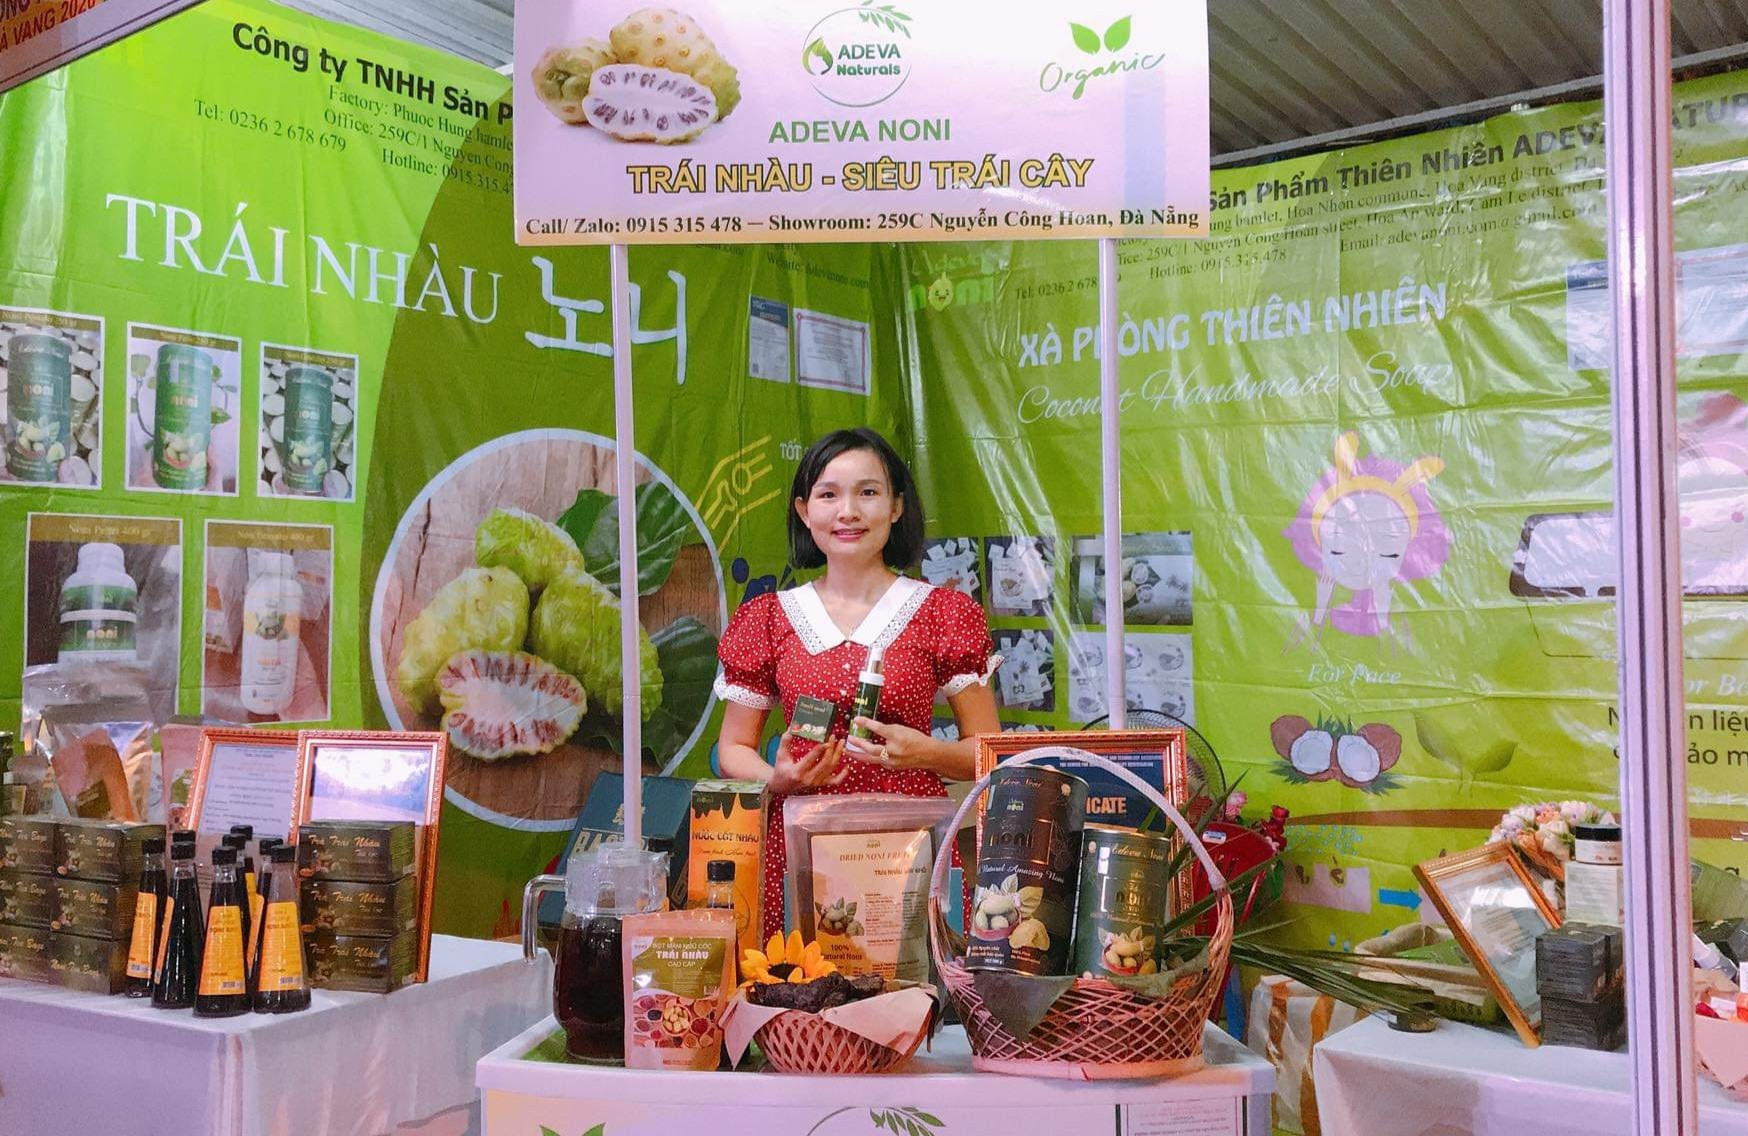 Chị Nguyễn Thu Dung với các sản phẩm từ trái nhàu. Ảnh: H.P